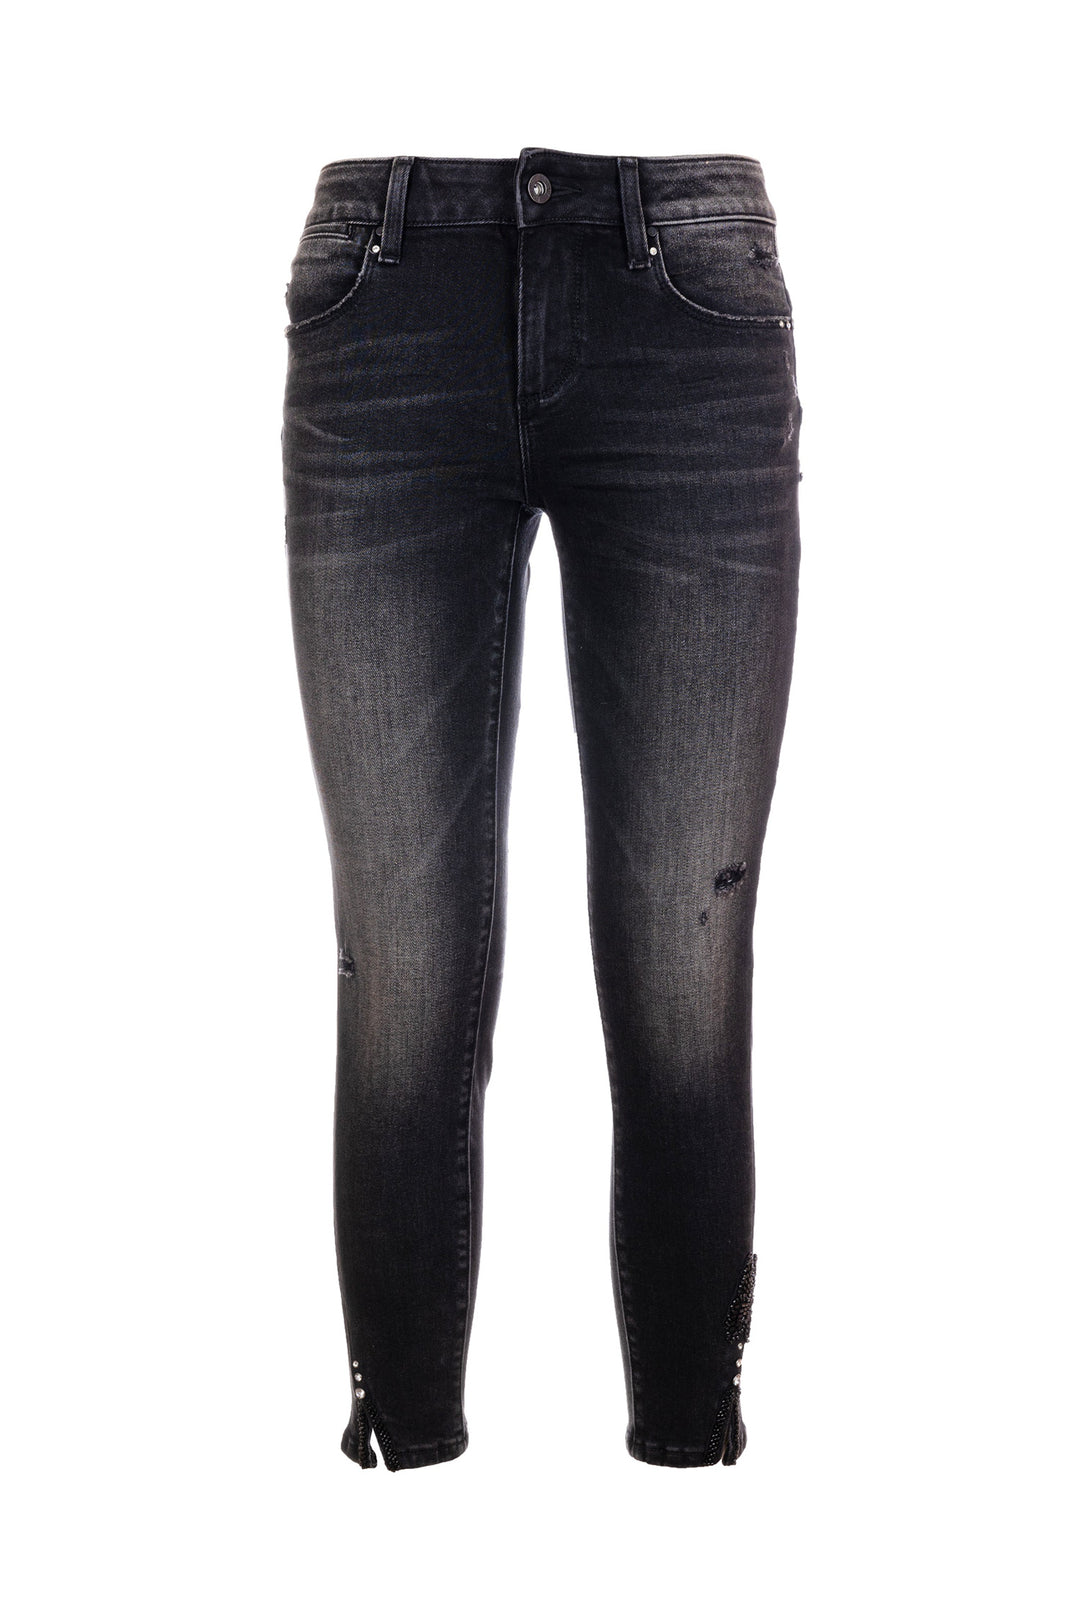 FRACOMINA Jeans slim effetto push up in denim nero con lavaggio medio - Mancinelli 1954